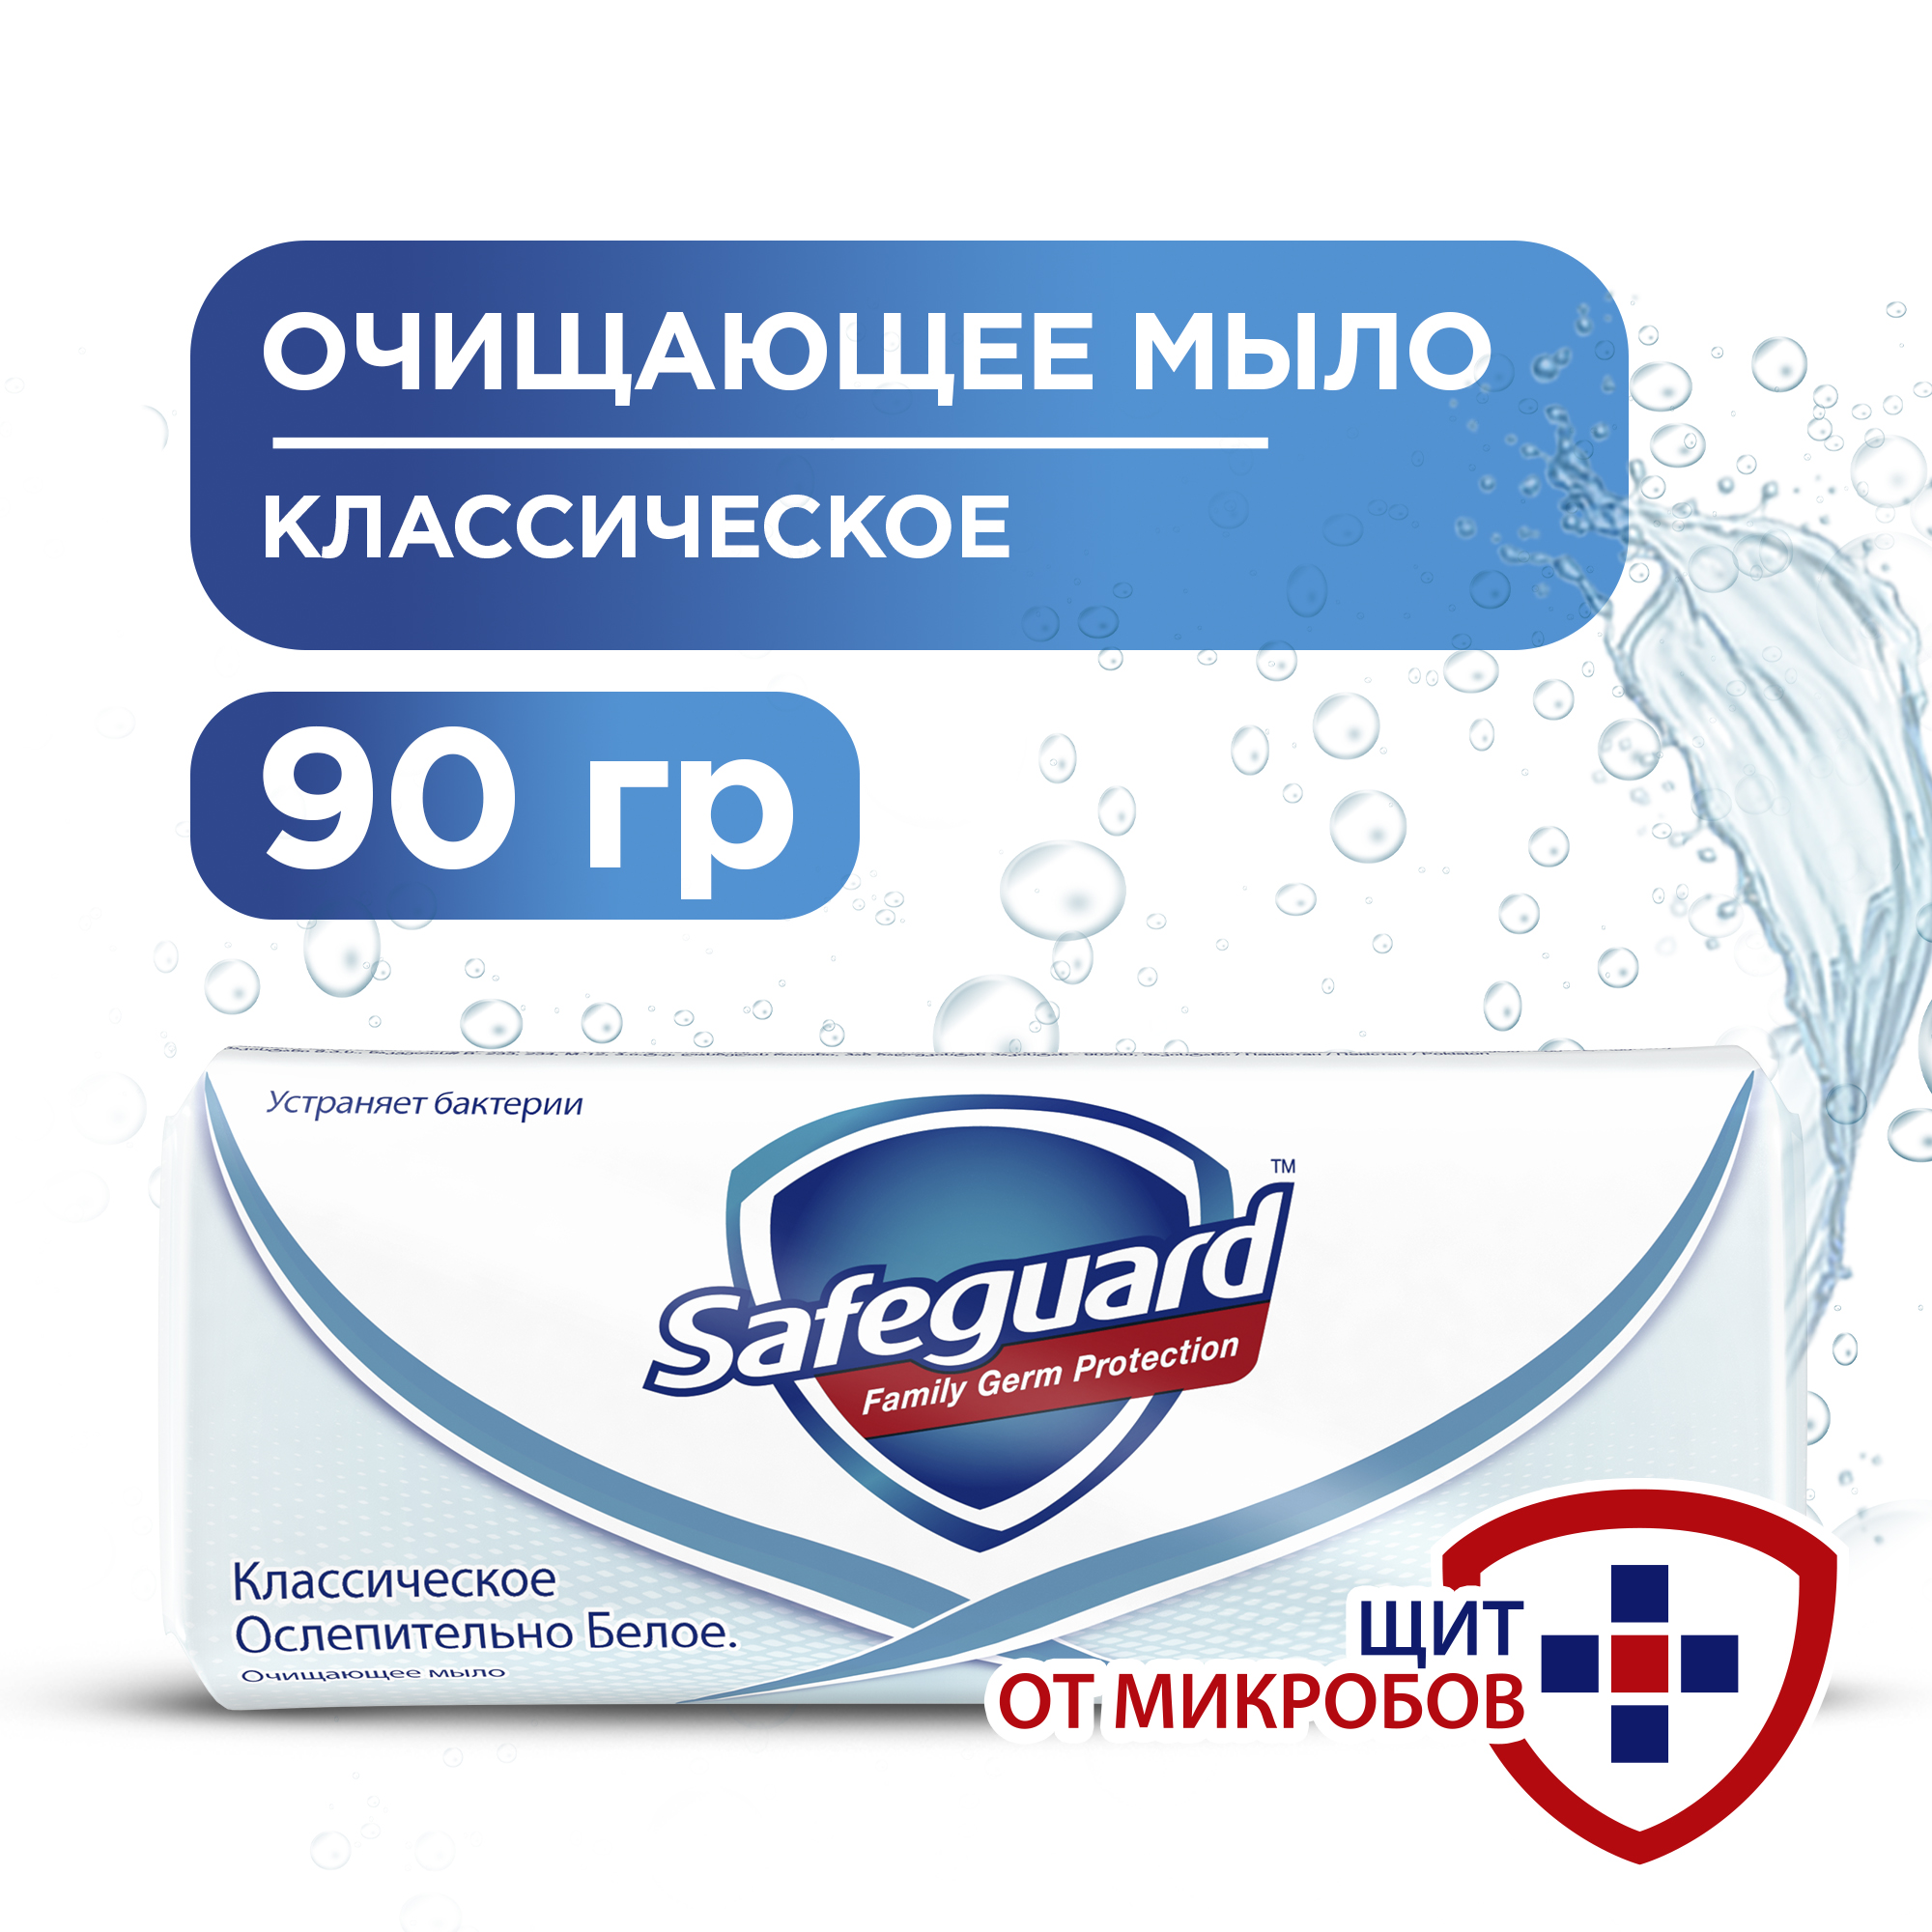 Мыло Safeguard, антибактериальное, классическое ослепительно белое 90 г. антибактериальное кусковое мыло для рук dettol оригинальное 100 г